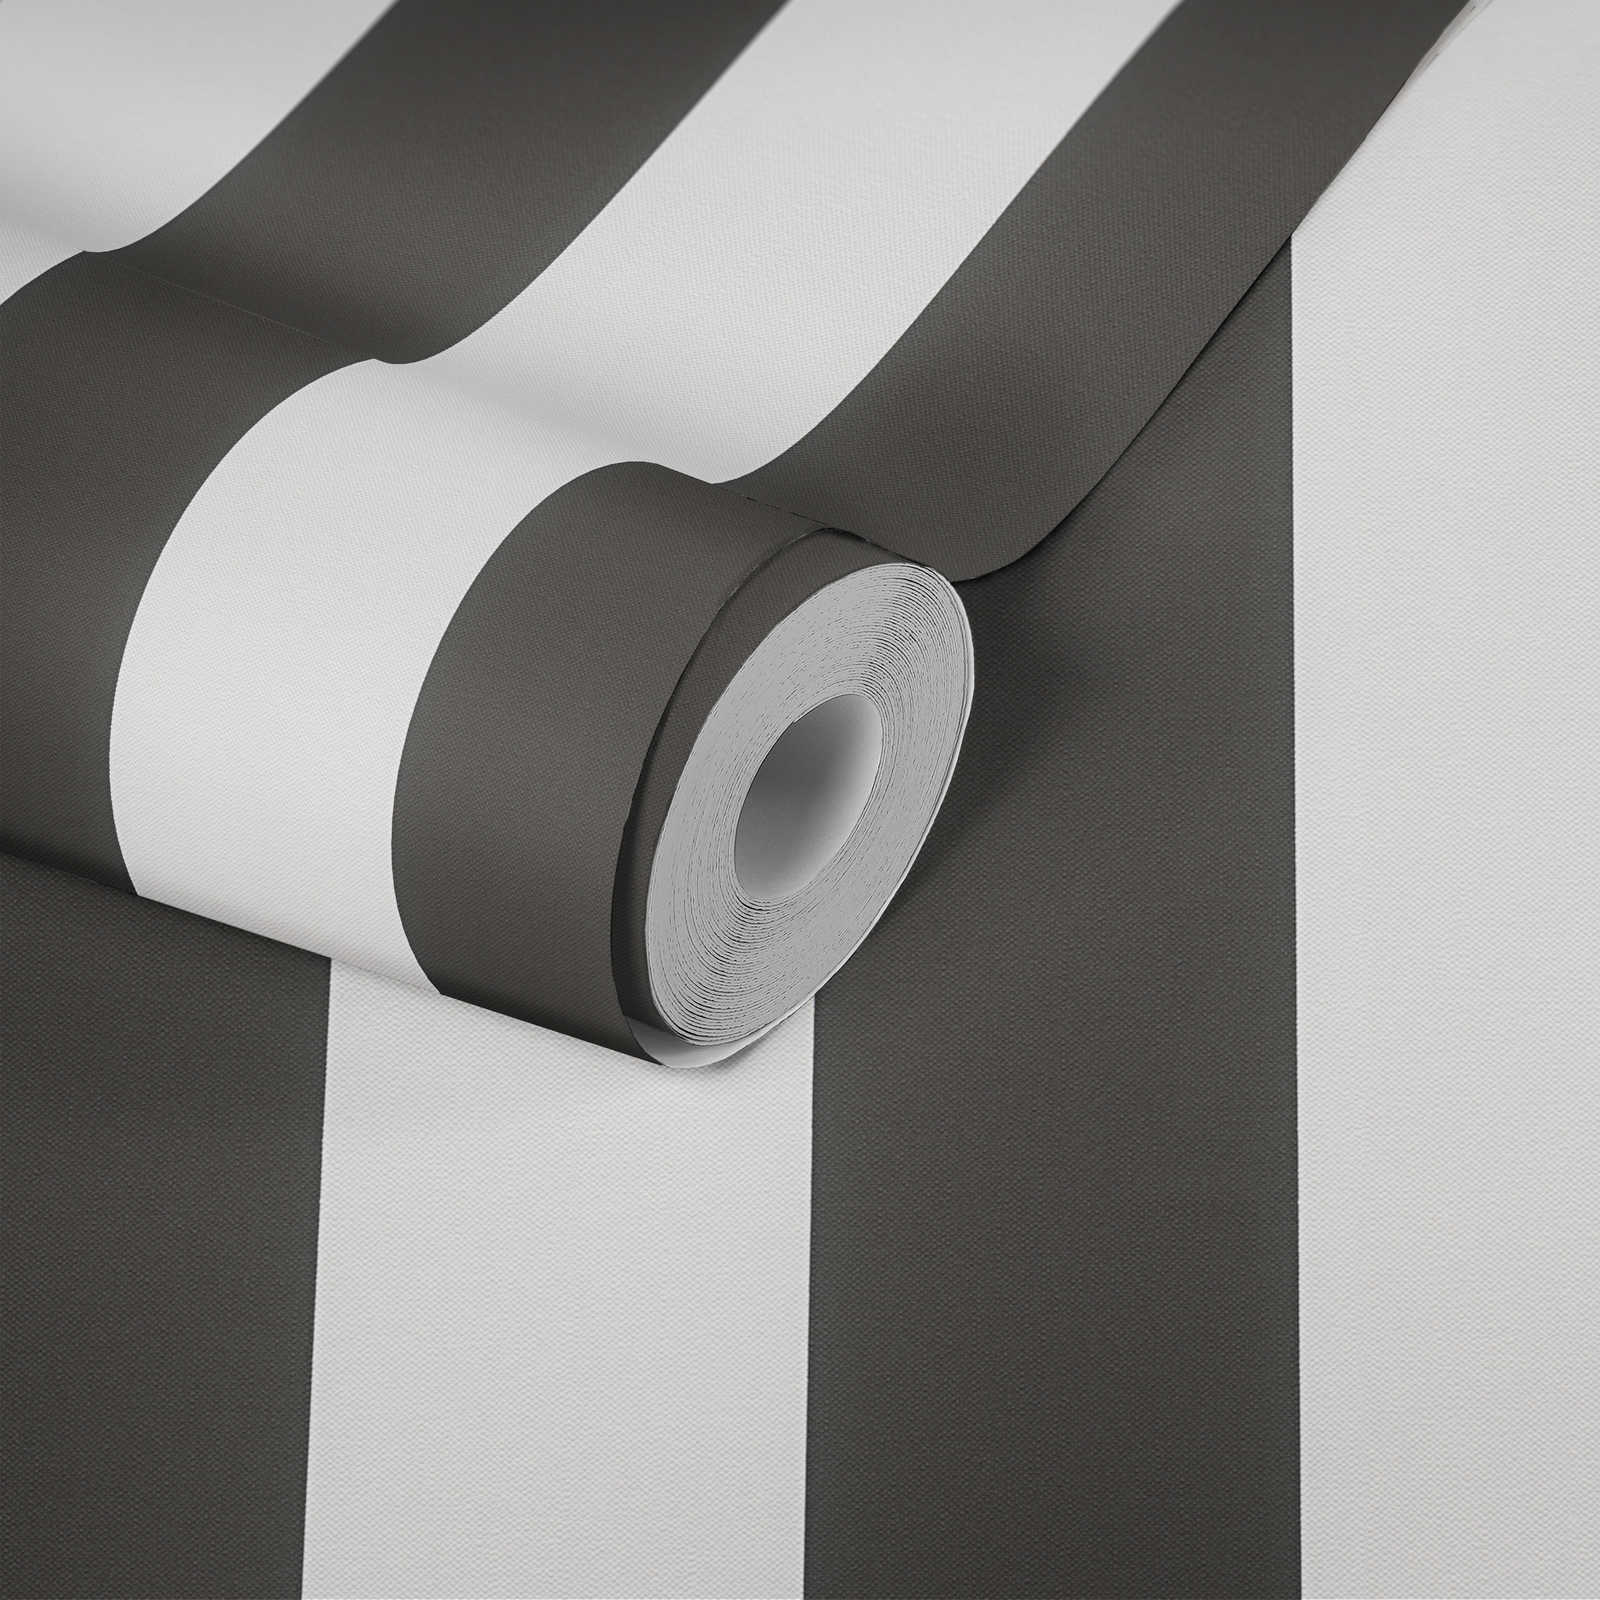             Striped wallpaper black and white design
        